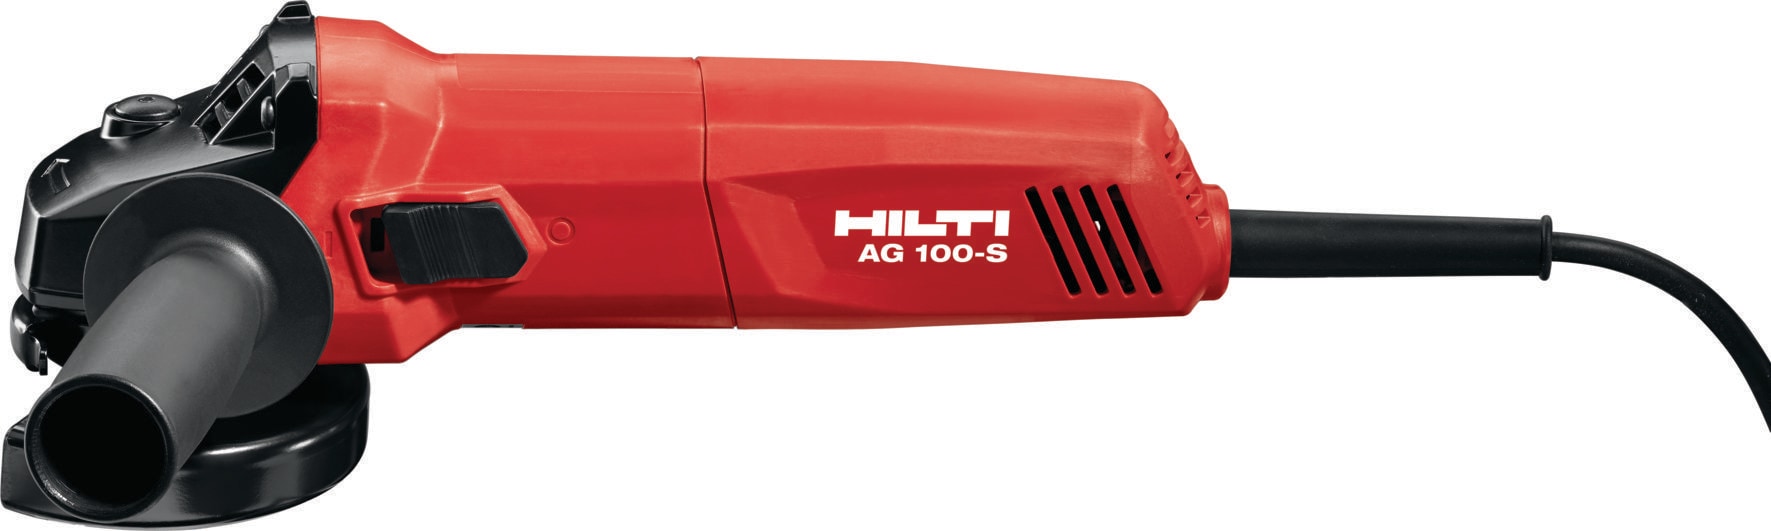 AG100-S アングルグラインダー - コード式アングルグラインダ - Hilti